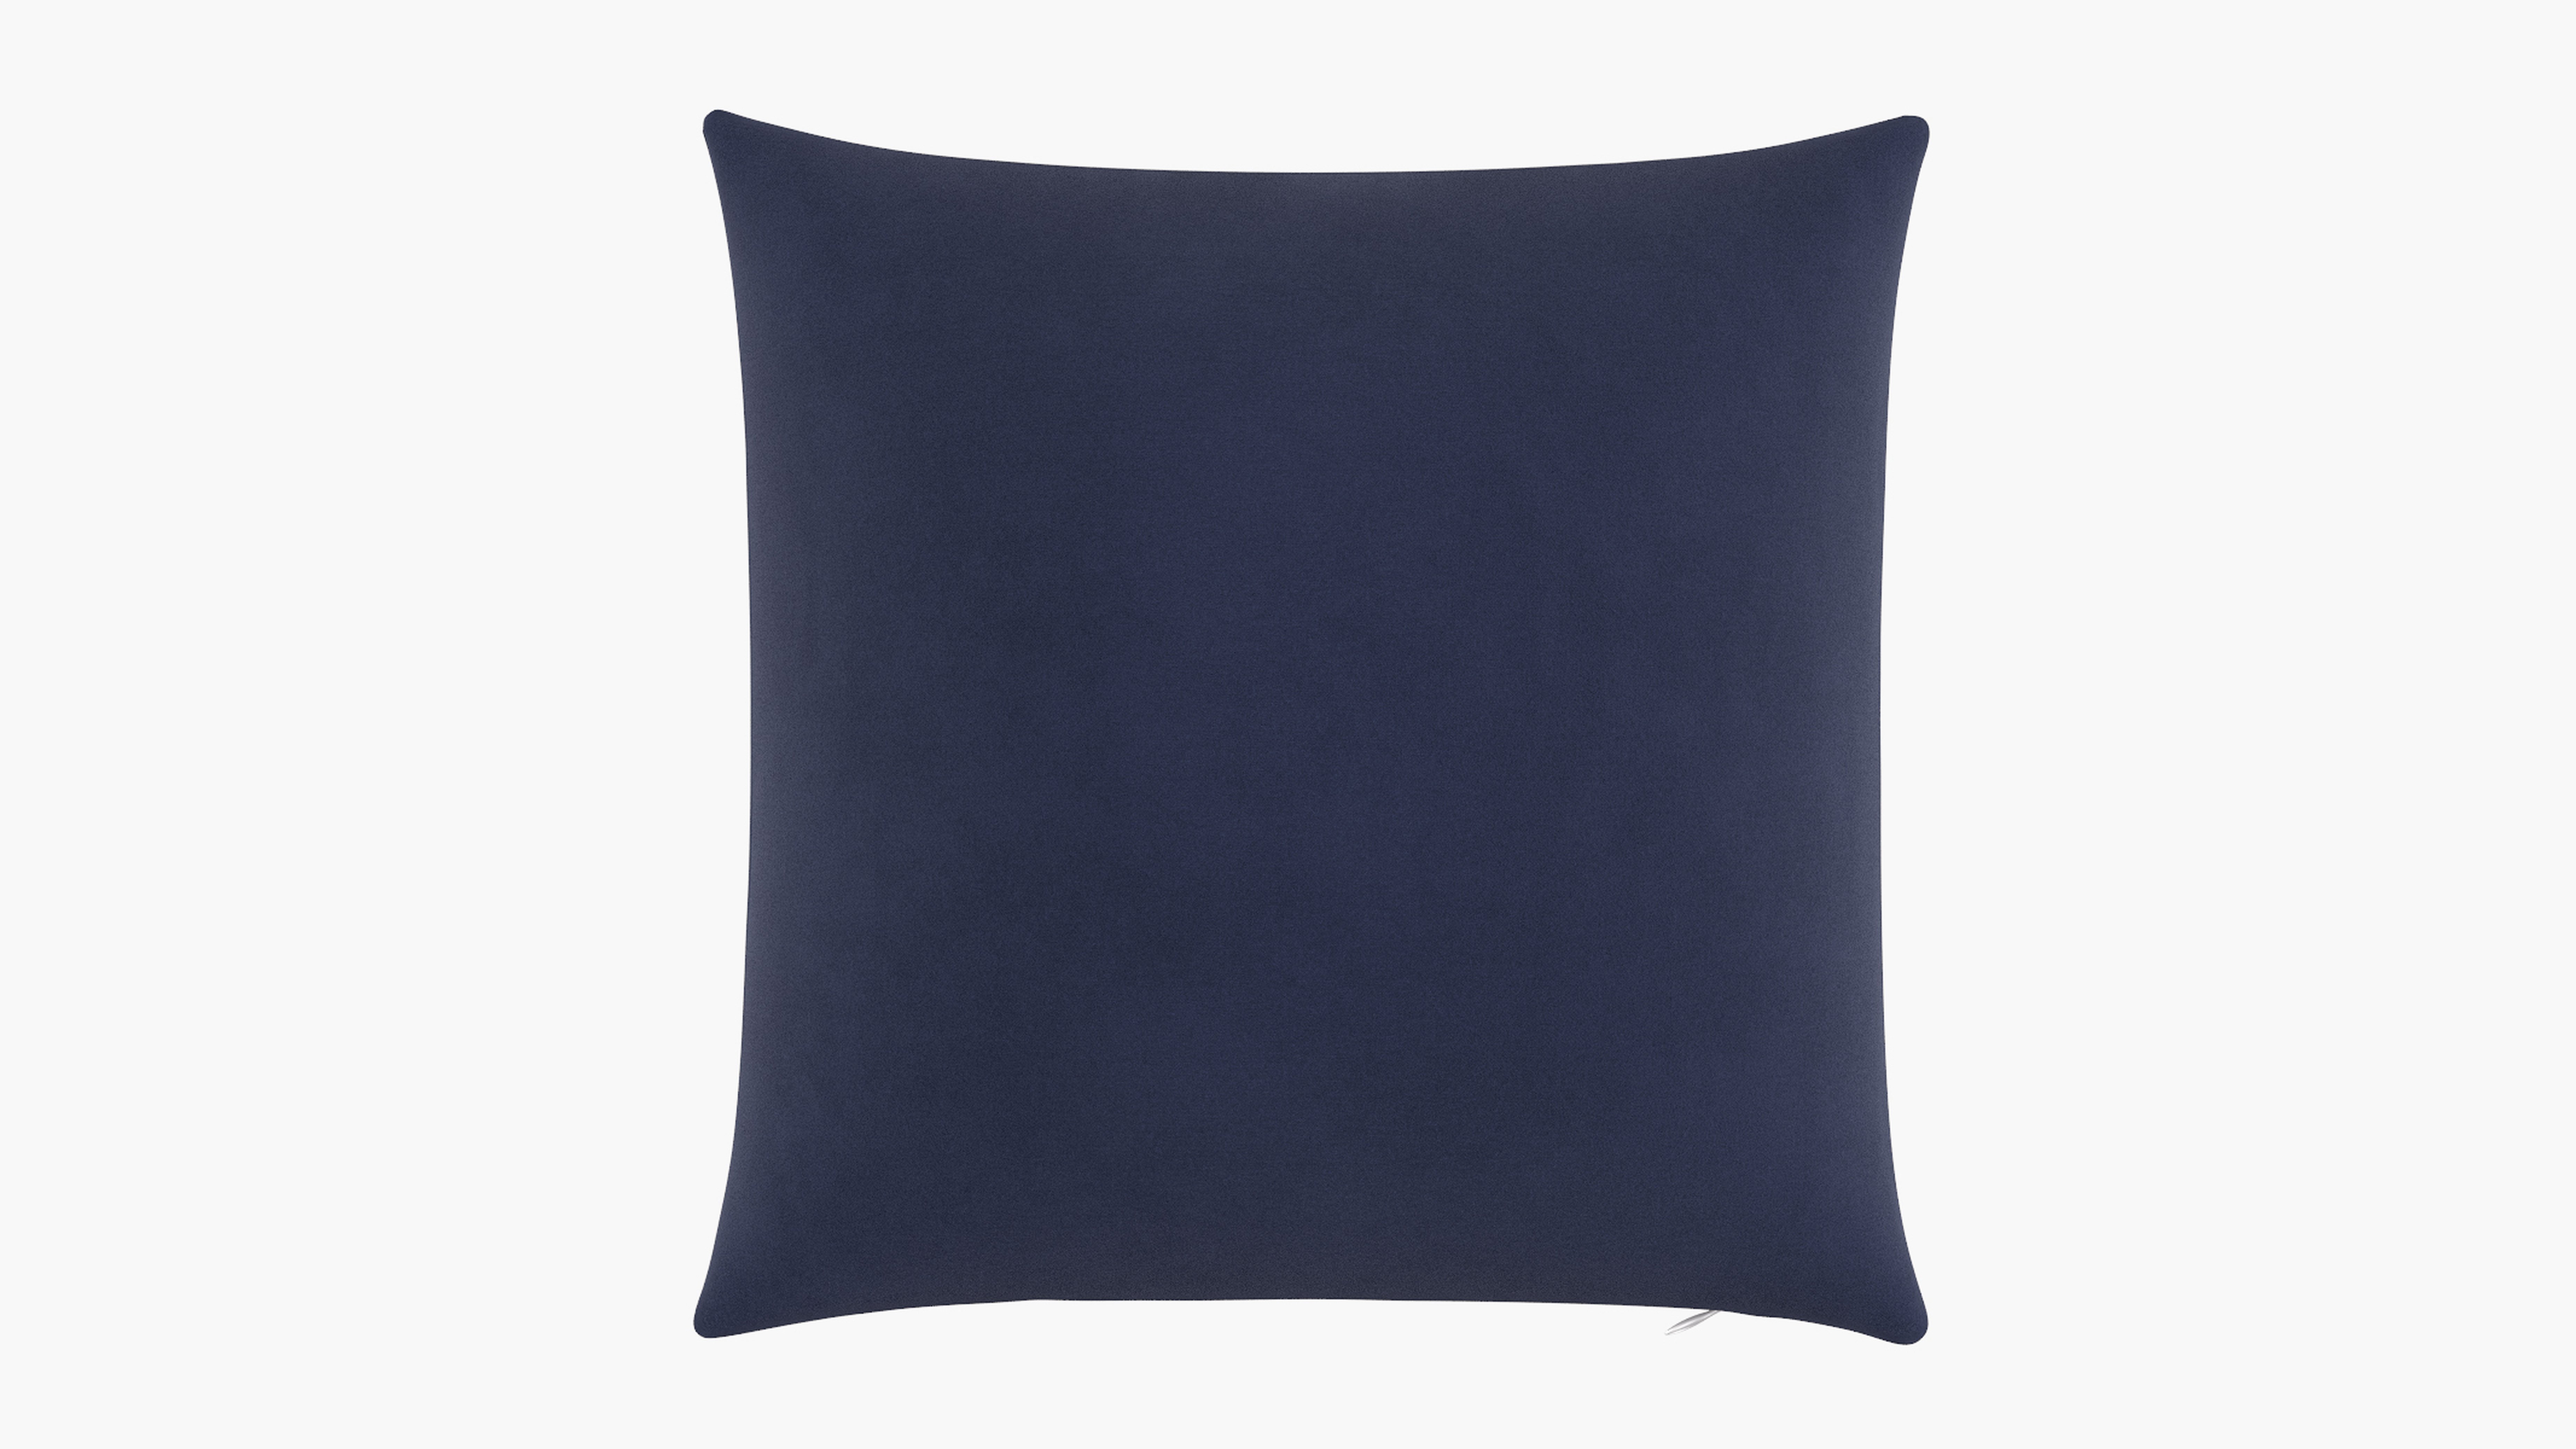 Throw Pillow, Navy Velvet, 20" x 20" - The Inside